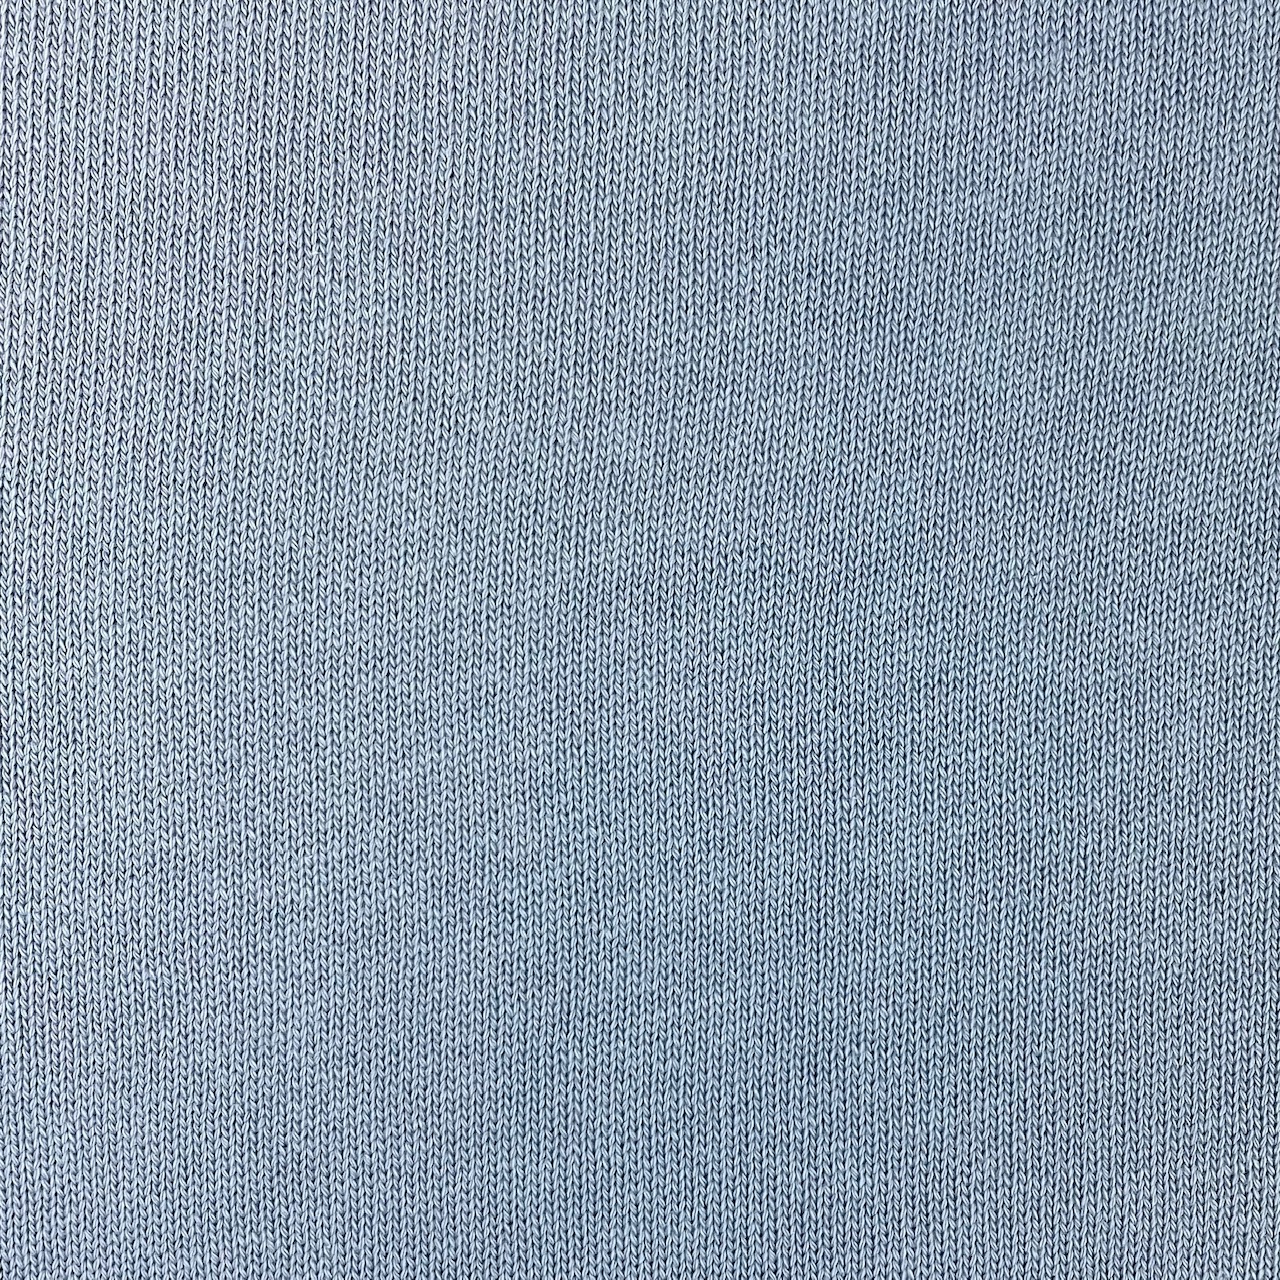 Feiner Strickstoff, Baumwolle hellblau. Art. 4199-401